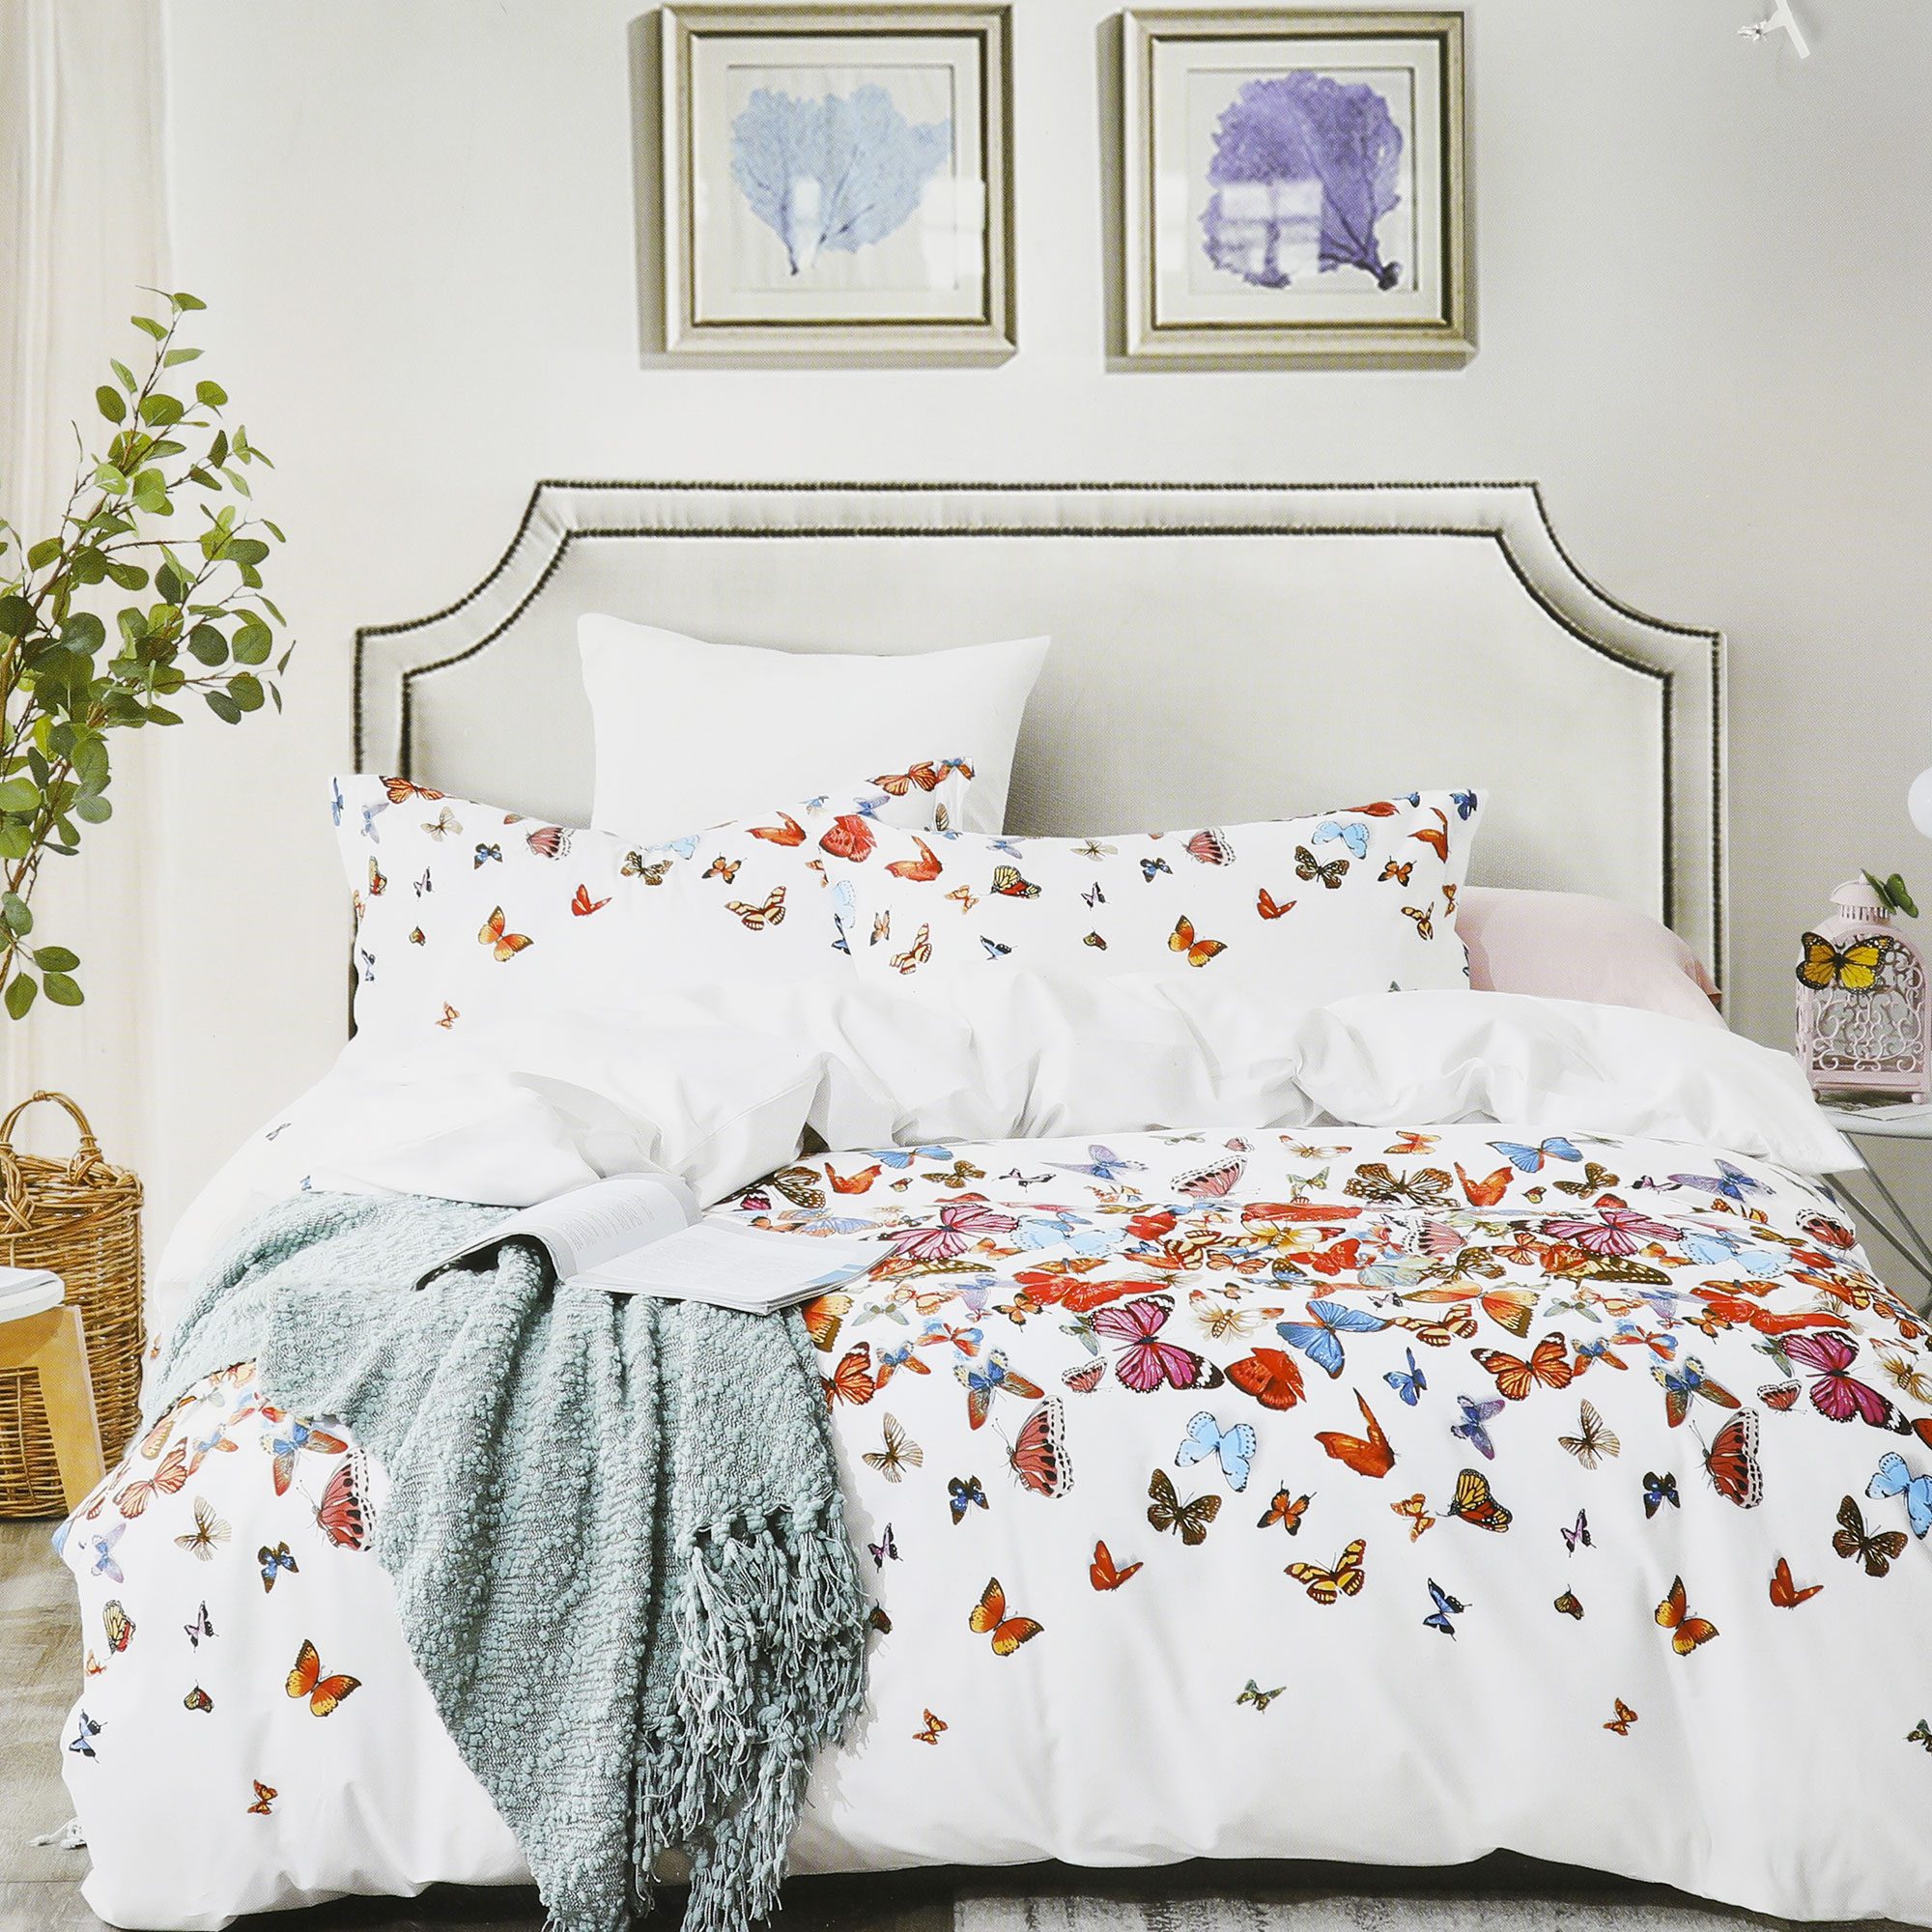 Постельный комплект Wonne Traum elegance butterfly двуспальный евро постельный комплект matteo bosio разноцветный двуспальный